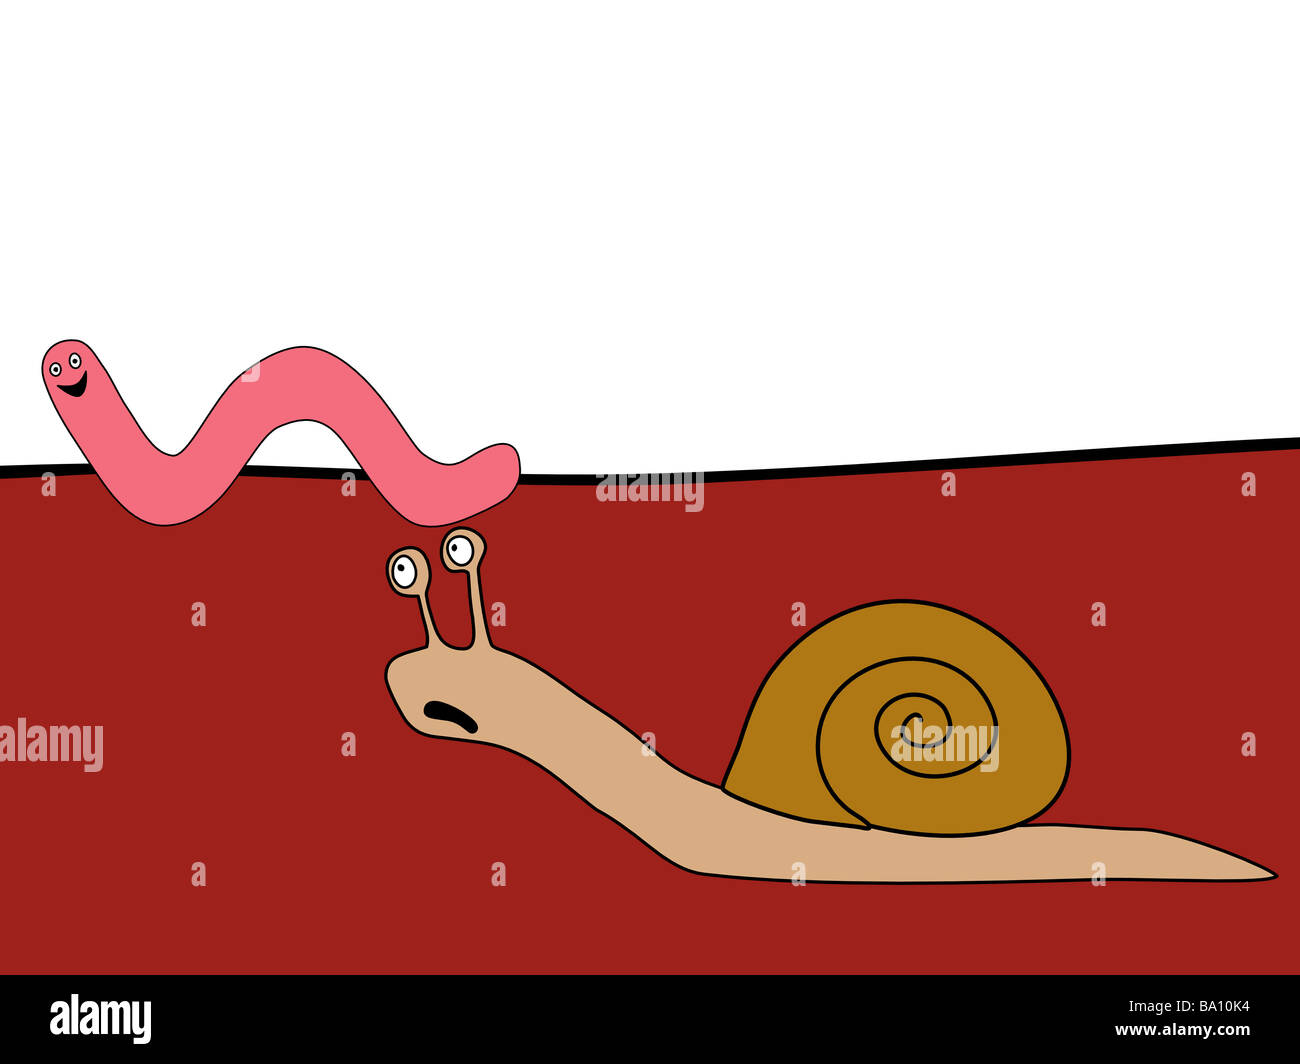 Caracol y worm - rápido y furioso Foto de stock